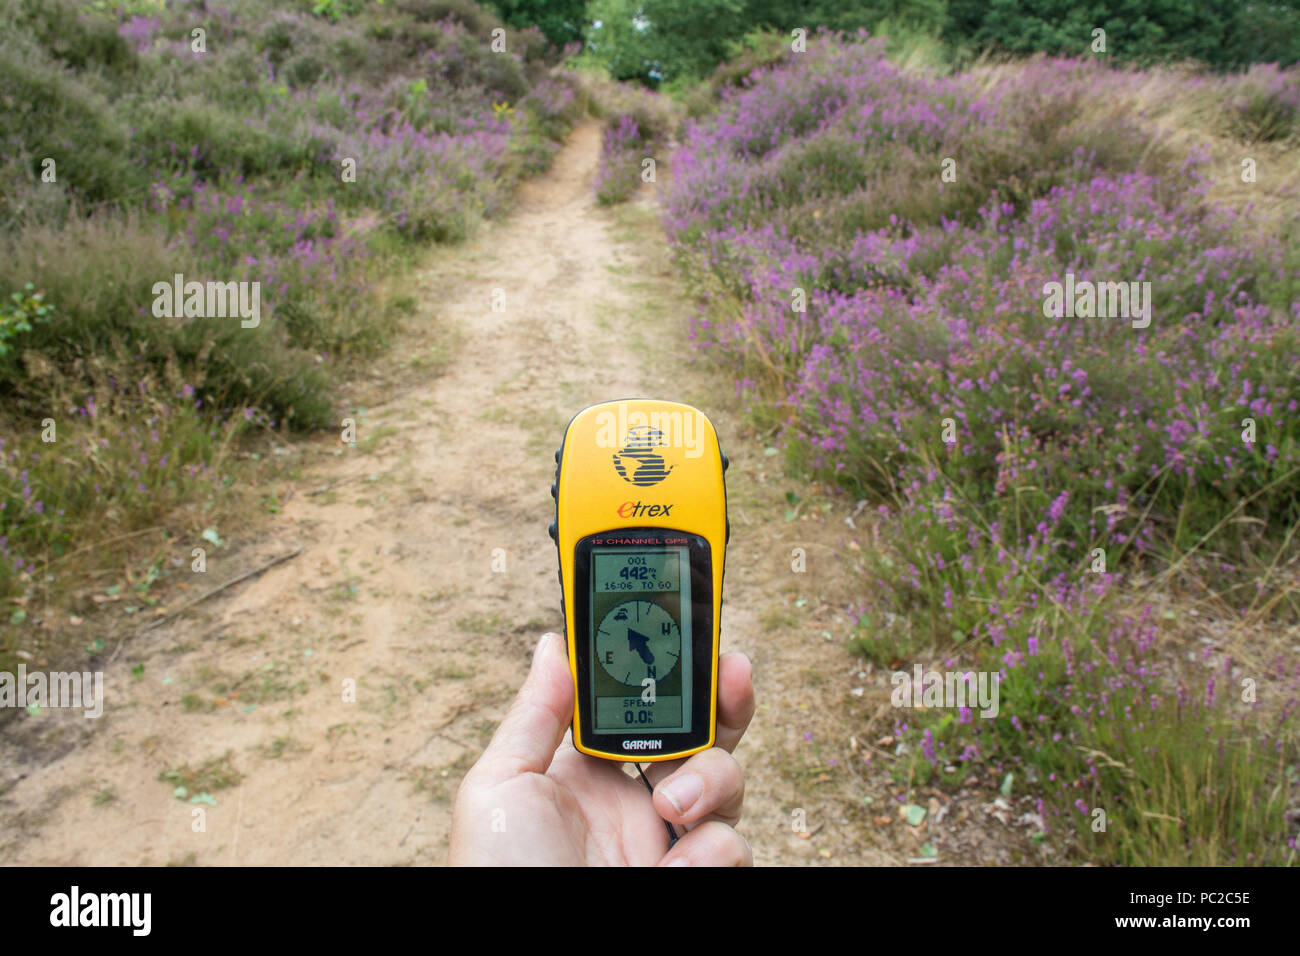 Frau mit einem Handheld Garmin GPS-Gerät den Weg in die Landschaft (Heide) Wanderwege zu finden Stockfoto